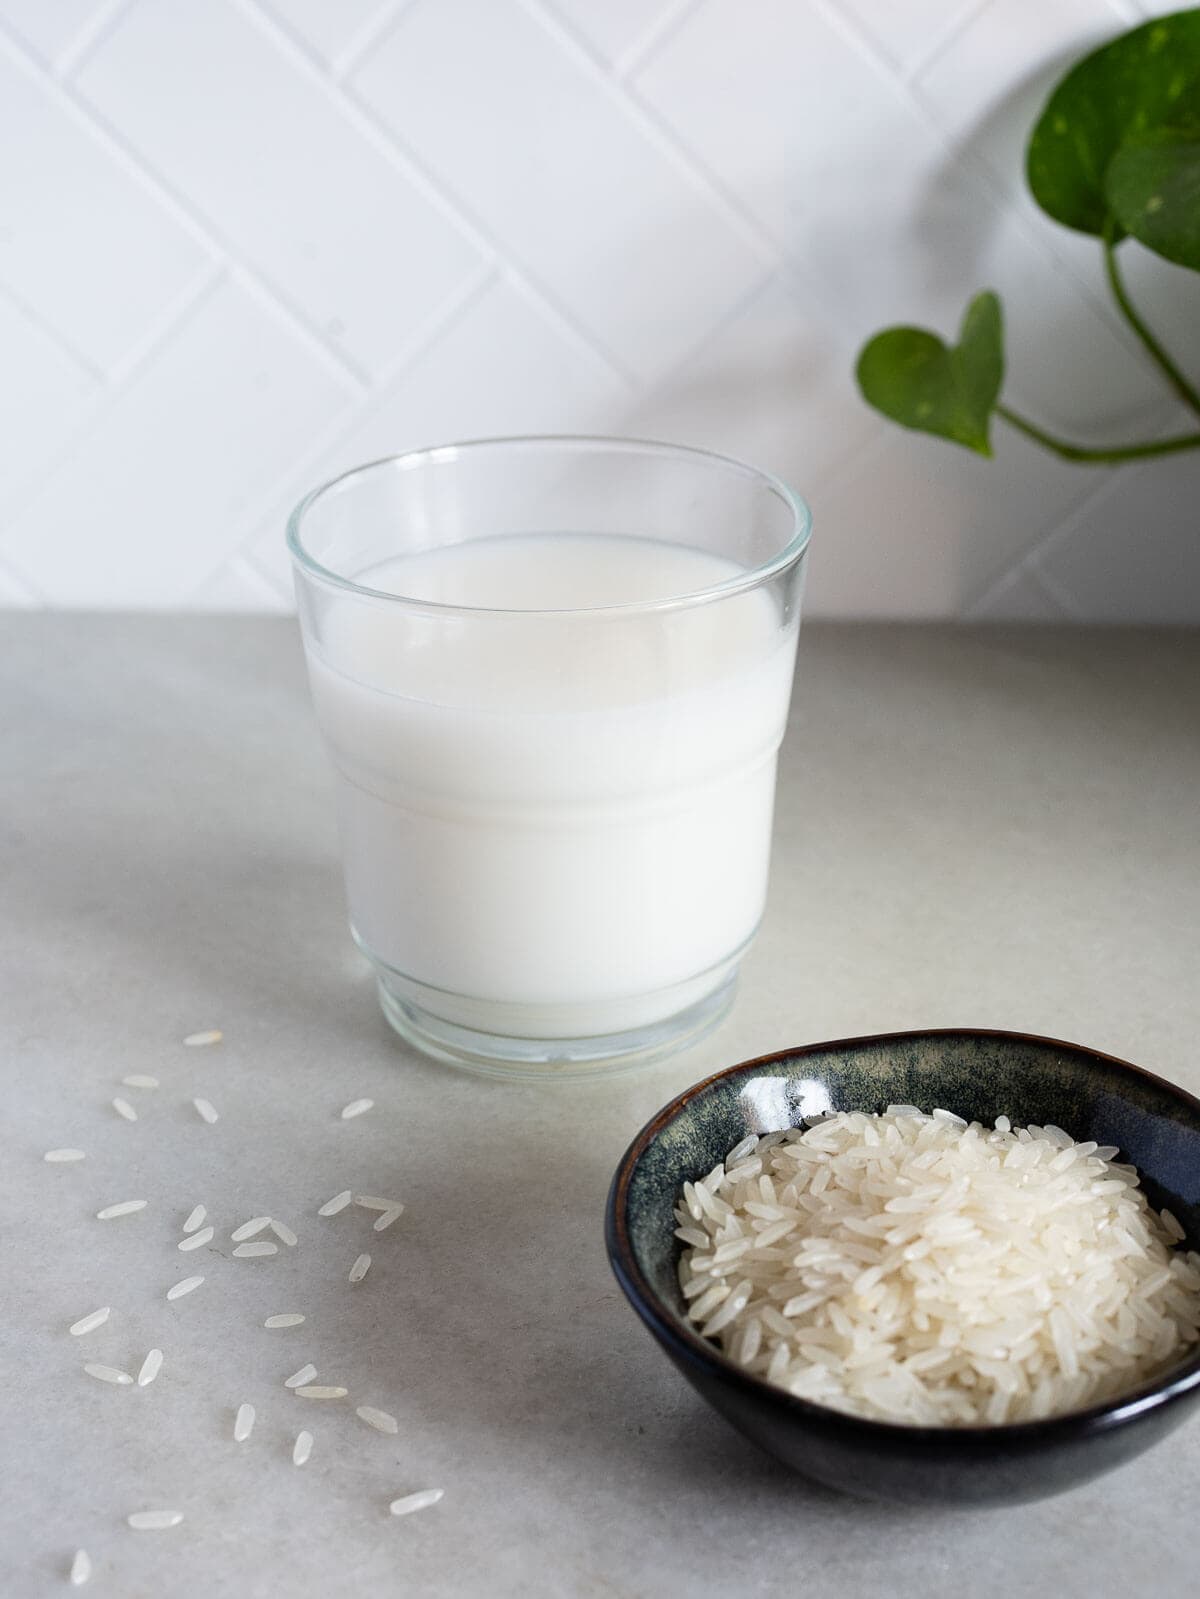 un vaso de leche de arroz junto a un cuenco de granos de arroz blanco sin cocer.